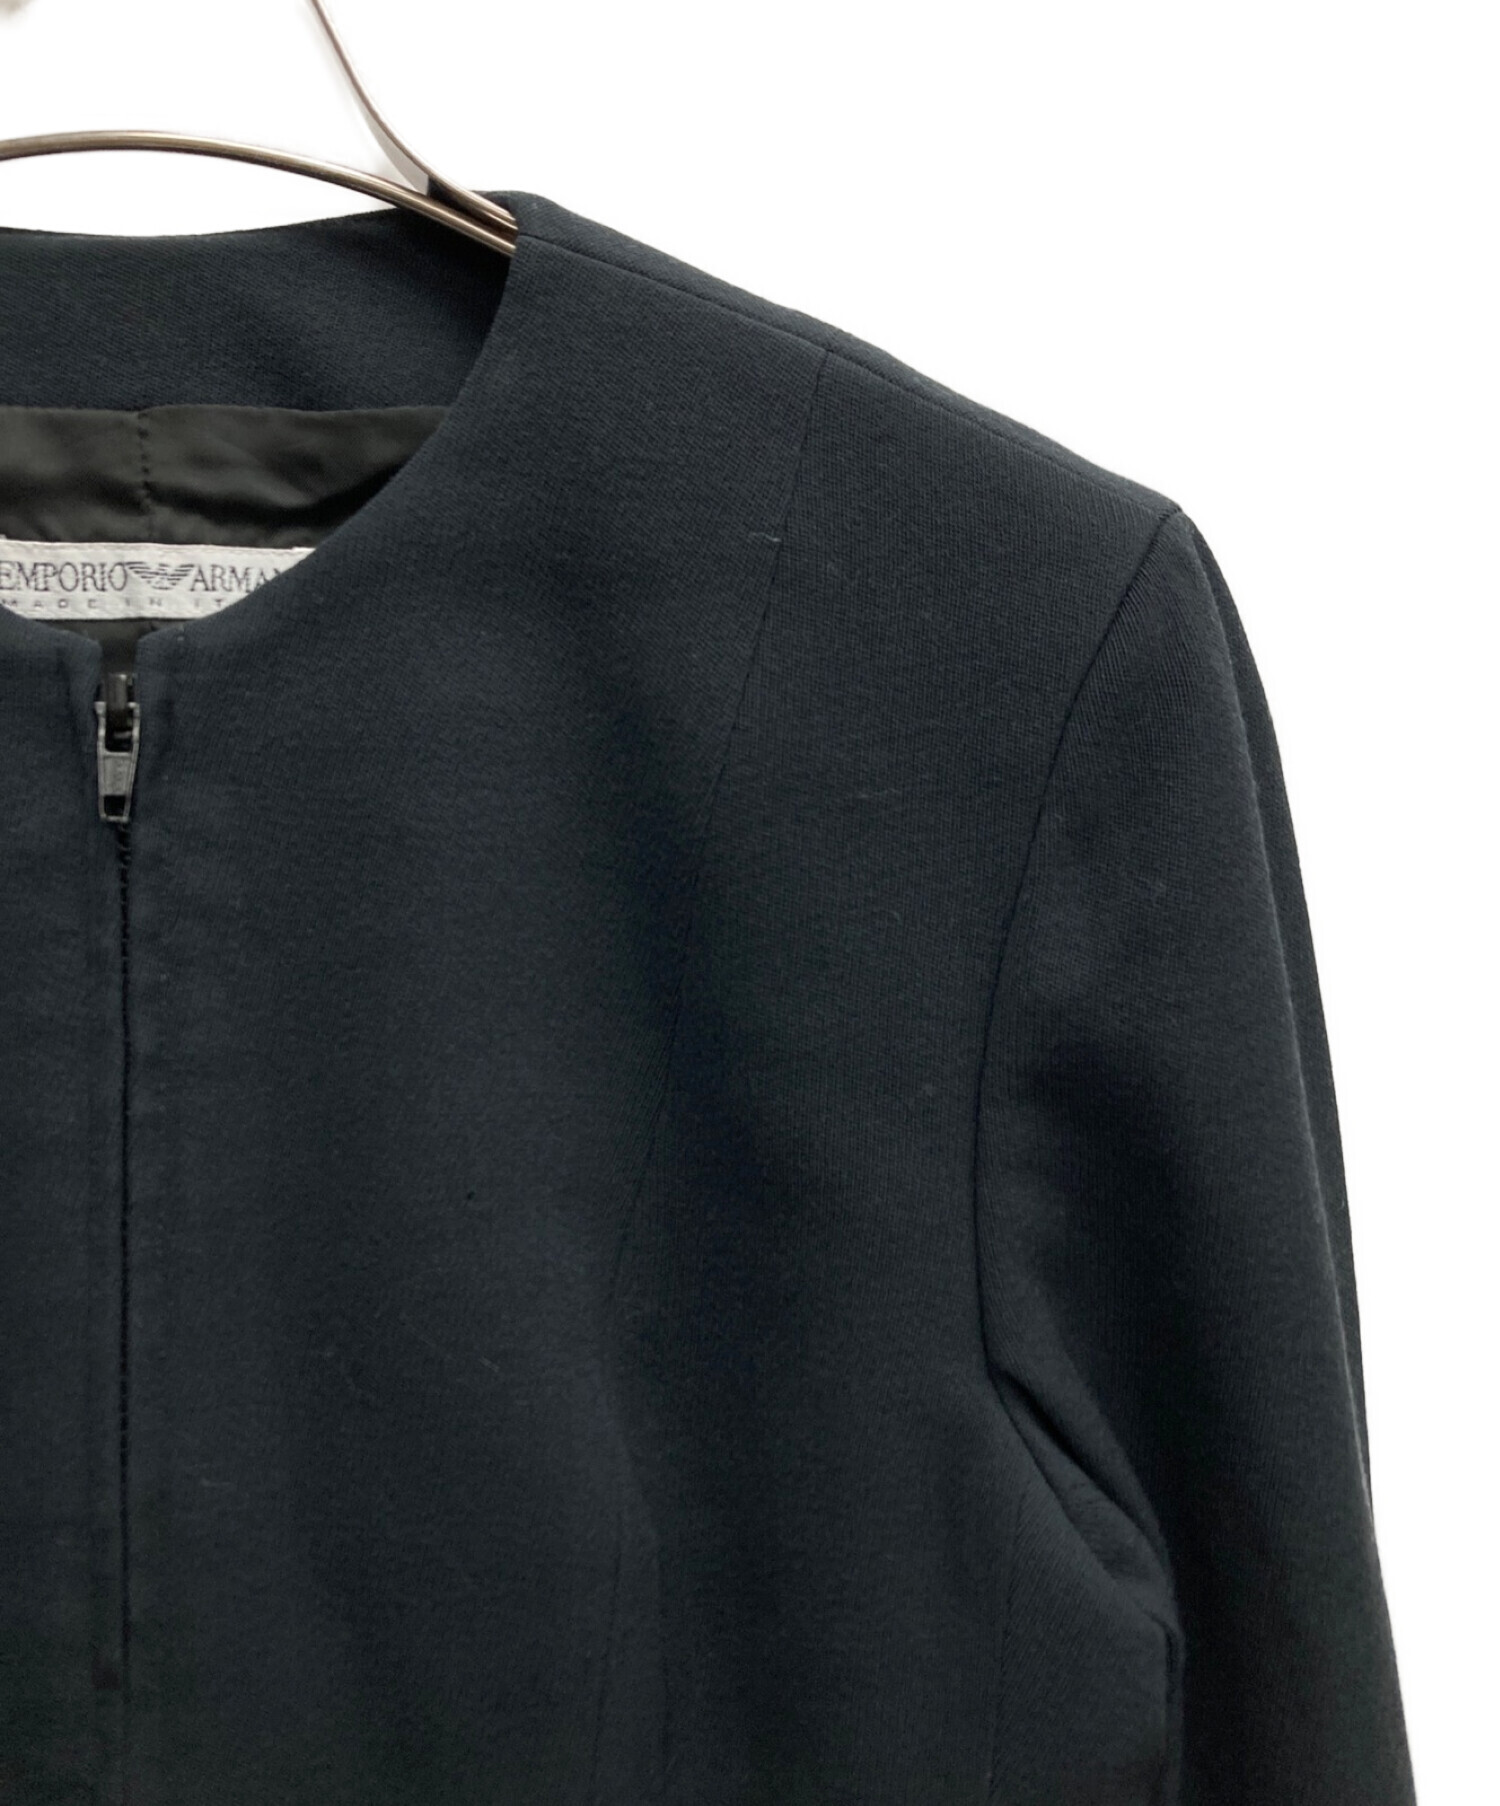 EMPORIO ARMANI (エンポリオアルマーニ) ウールジャケット ブラック サイズ:38